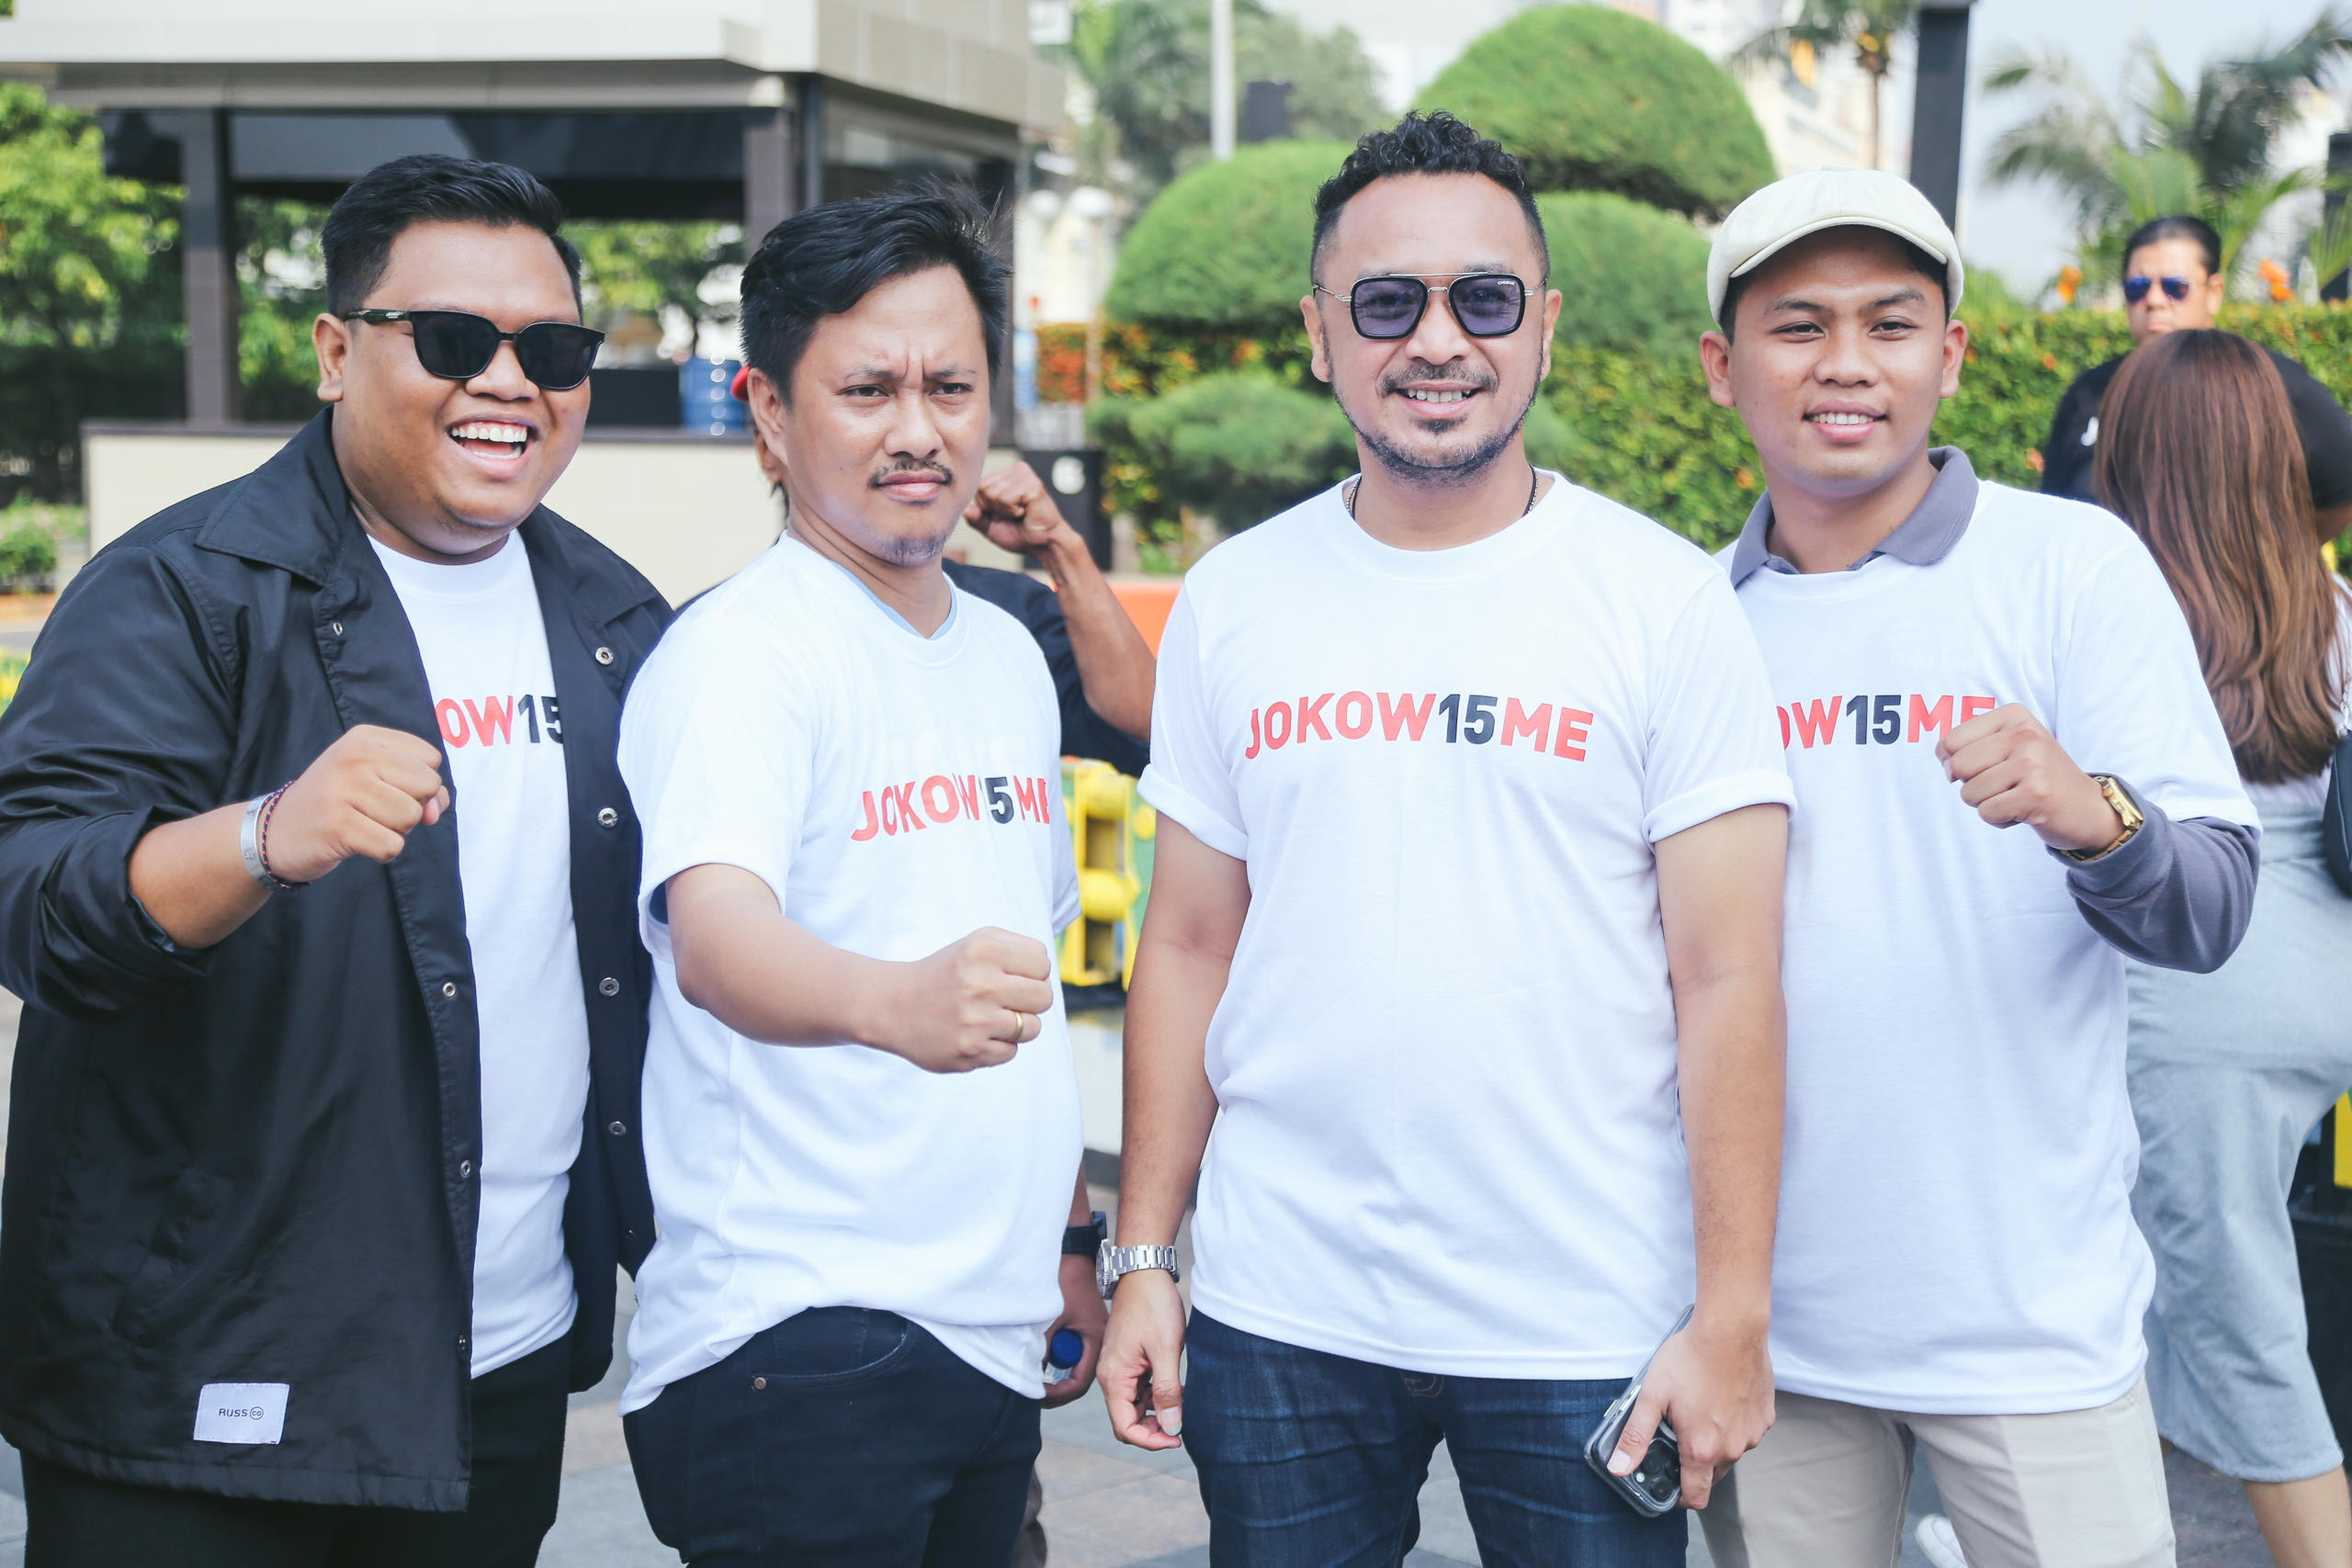  Giring dan Kader PSI Kompak Kenakan Seragam Merah Putih Bertuliskan ‘Jokow15me’ di Plaza Indonesia, Ada Apa?